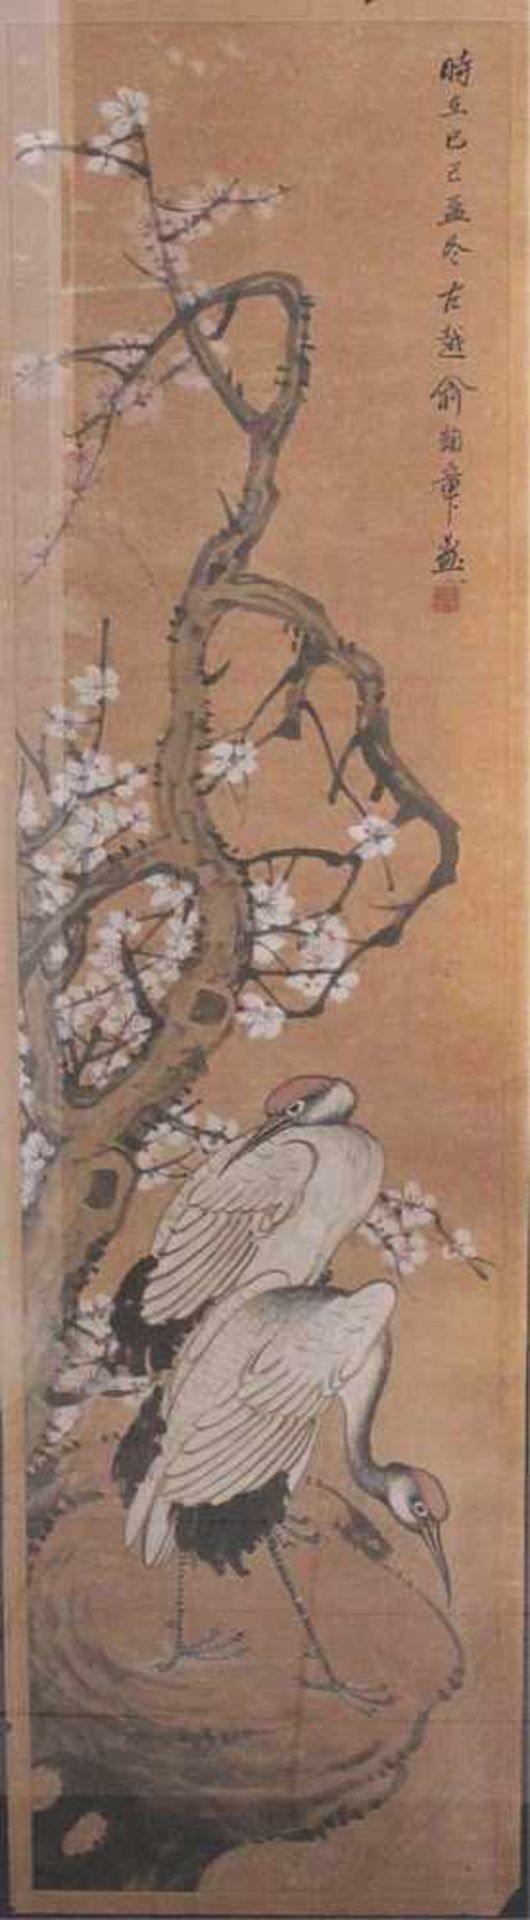 Tuschemalerei im Stil von Qi BaishiTusche und Farben auf Papier. Darstellung von Kranischen